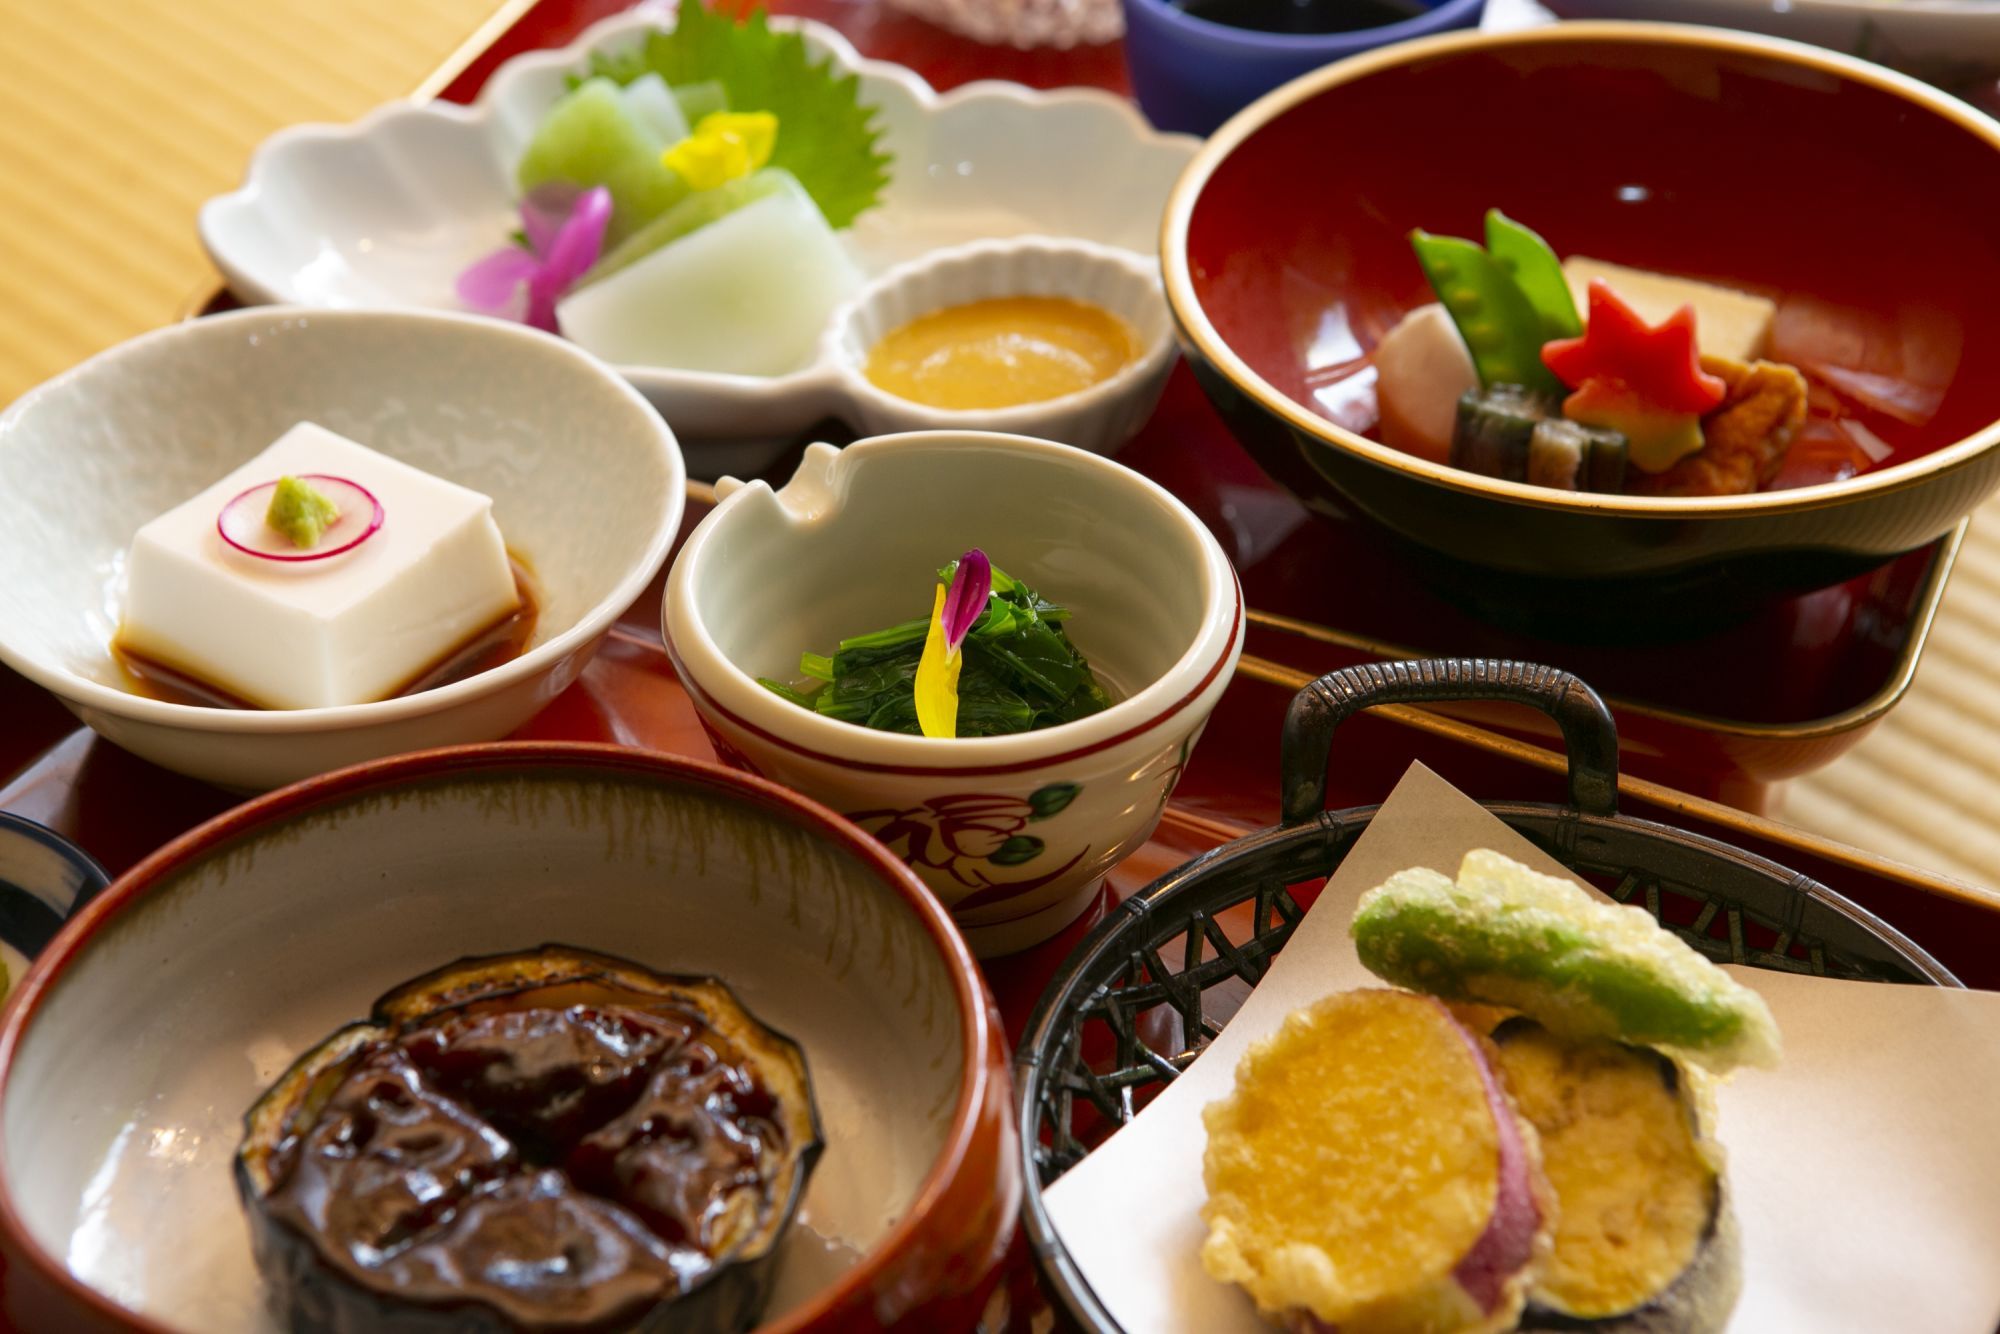 Le Japon promeut le tourisme universel, et répond aux divers besoins  alimentaires – Office national du tourisme japonais (Japan National Tourism  Organization, JNTO) | Business Wire